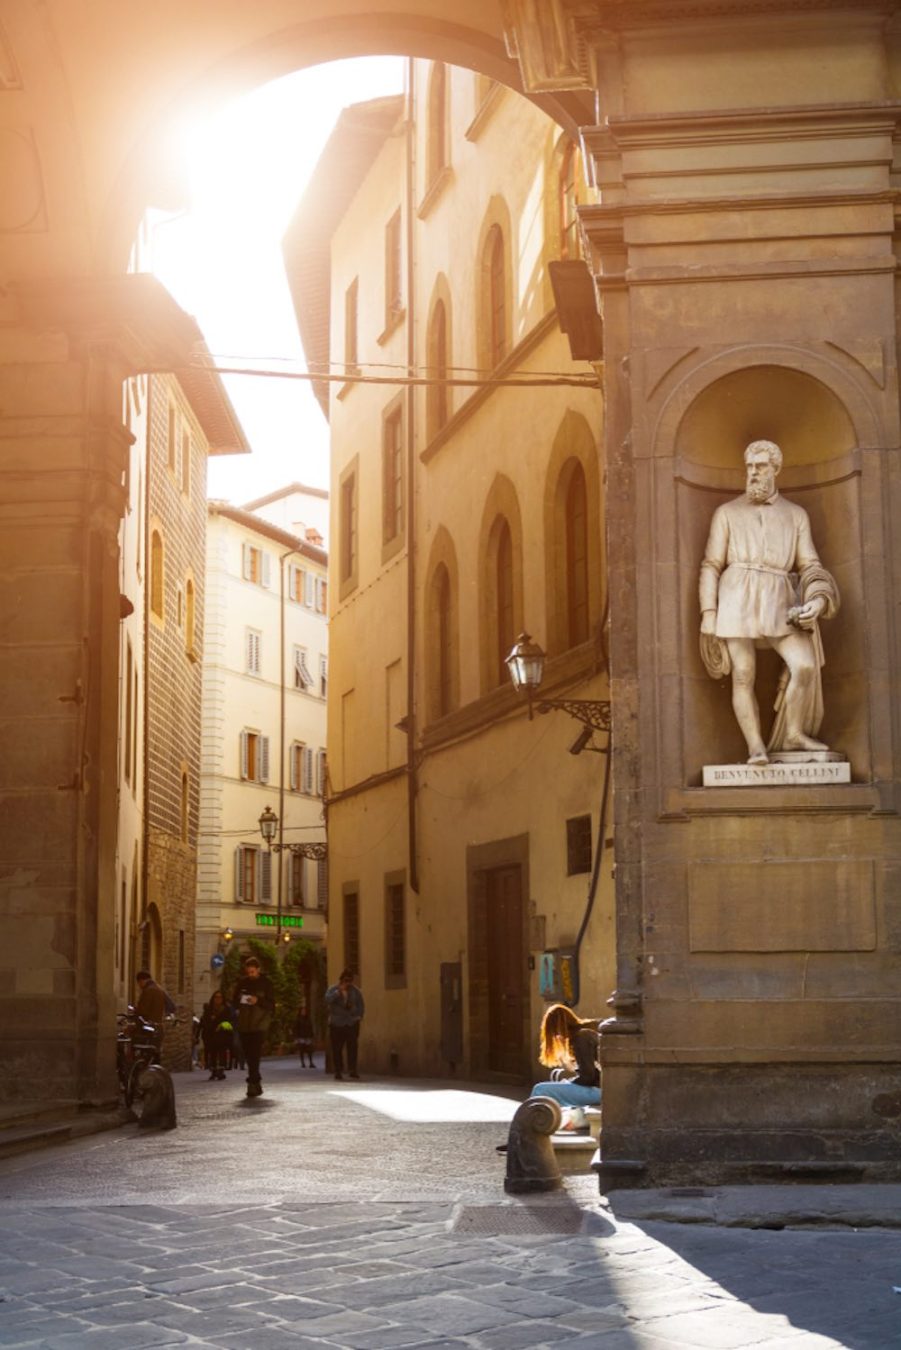 Le vie di Firenze: ingresso a via Lambertesca